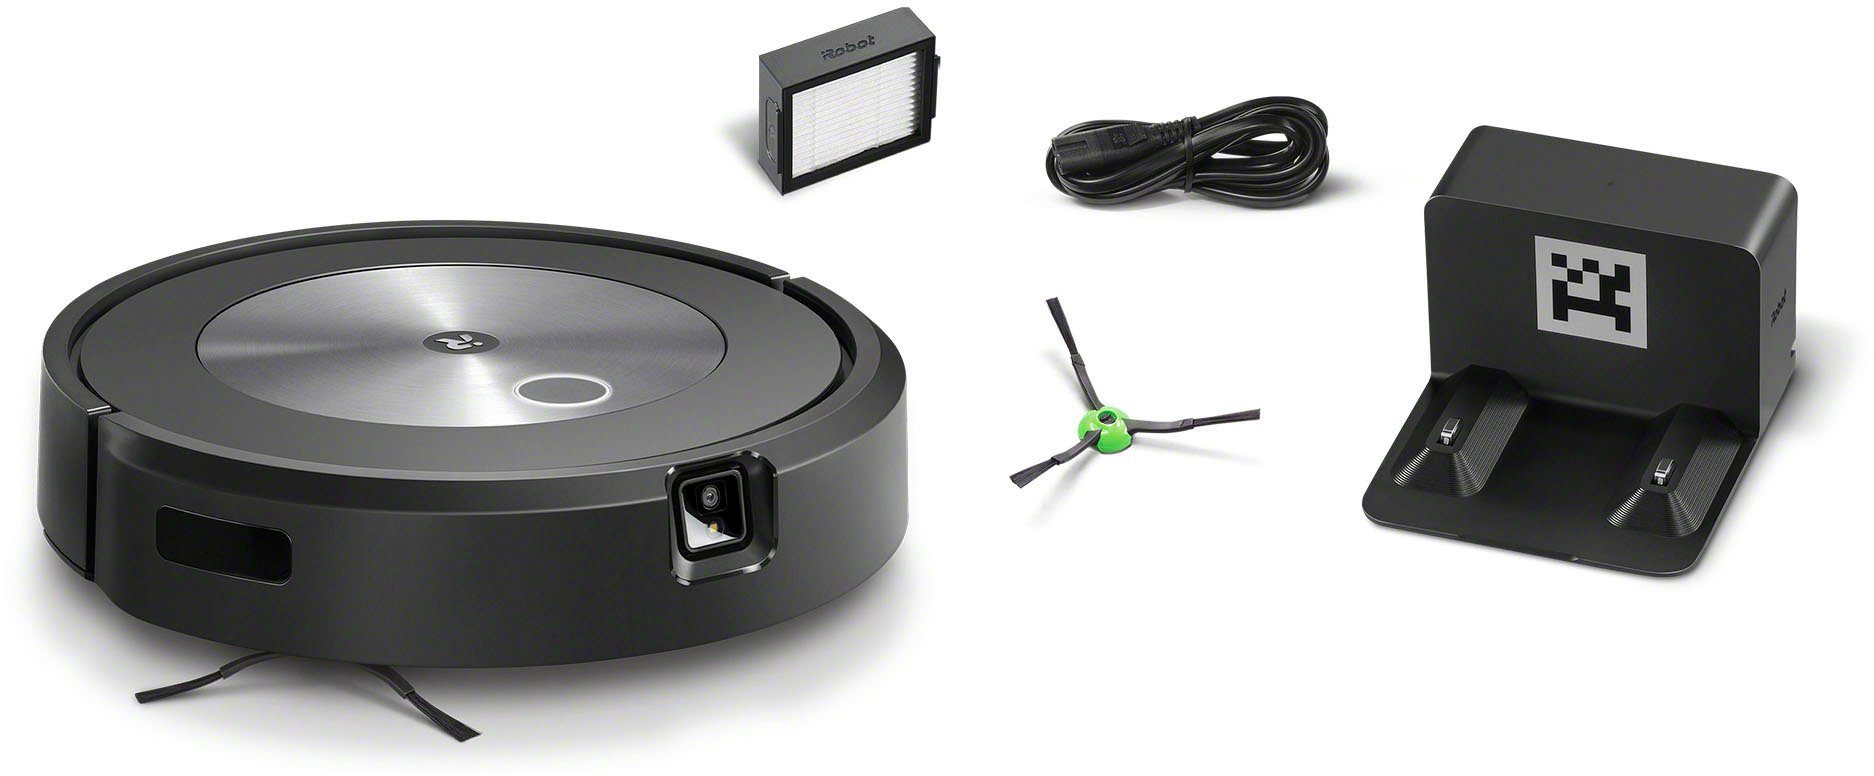 Kartierung, beutellos, (j7158), Roomba® iRobot j7 Saugroboter WLAN-fähig, Objekterkennung